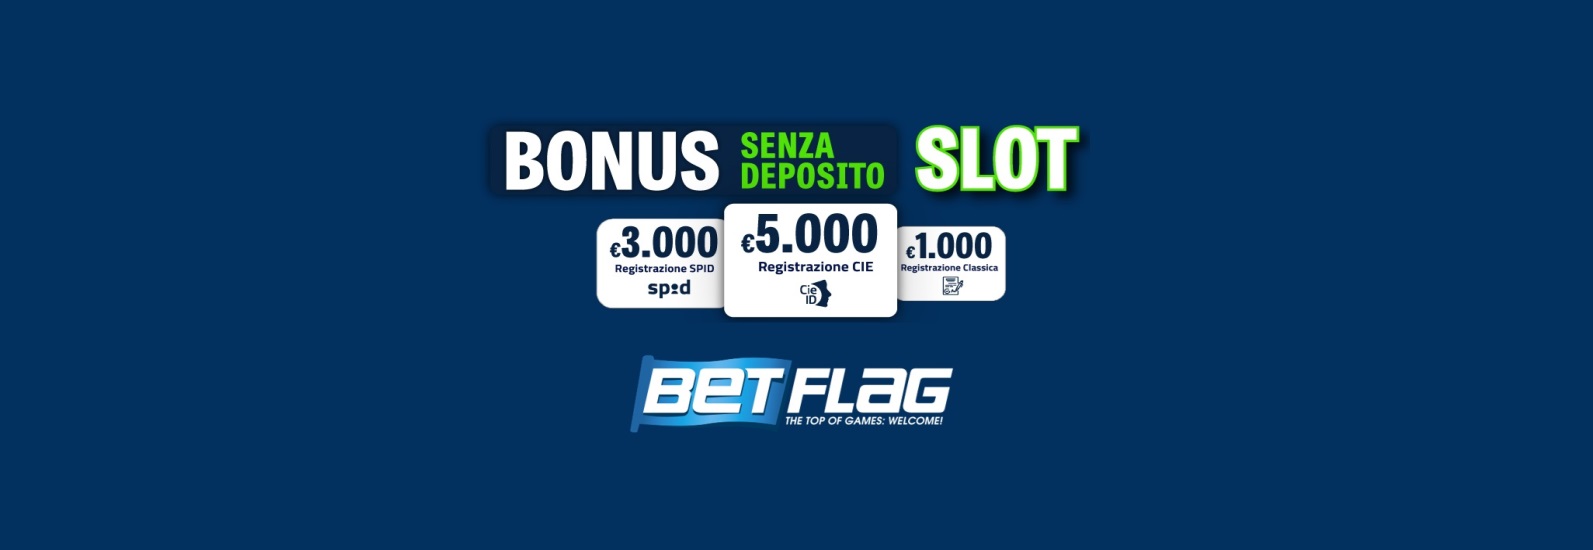 Bonus senza deposito BetFlag: fino a 5.000€ per giocare alle slot!